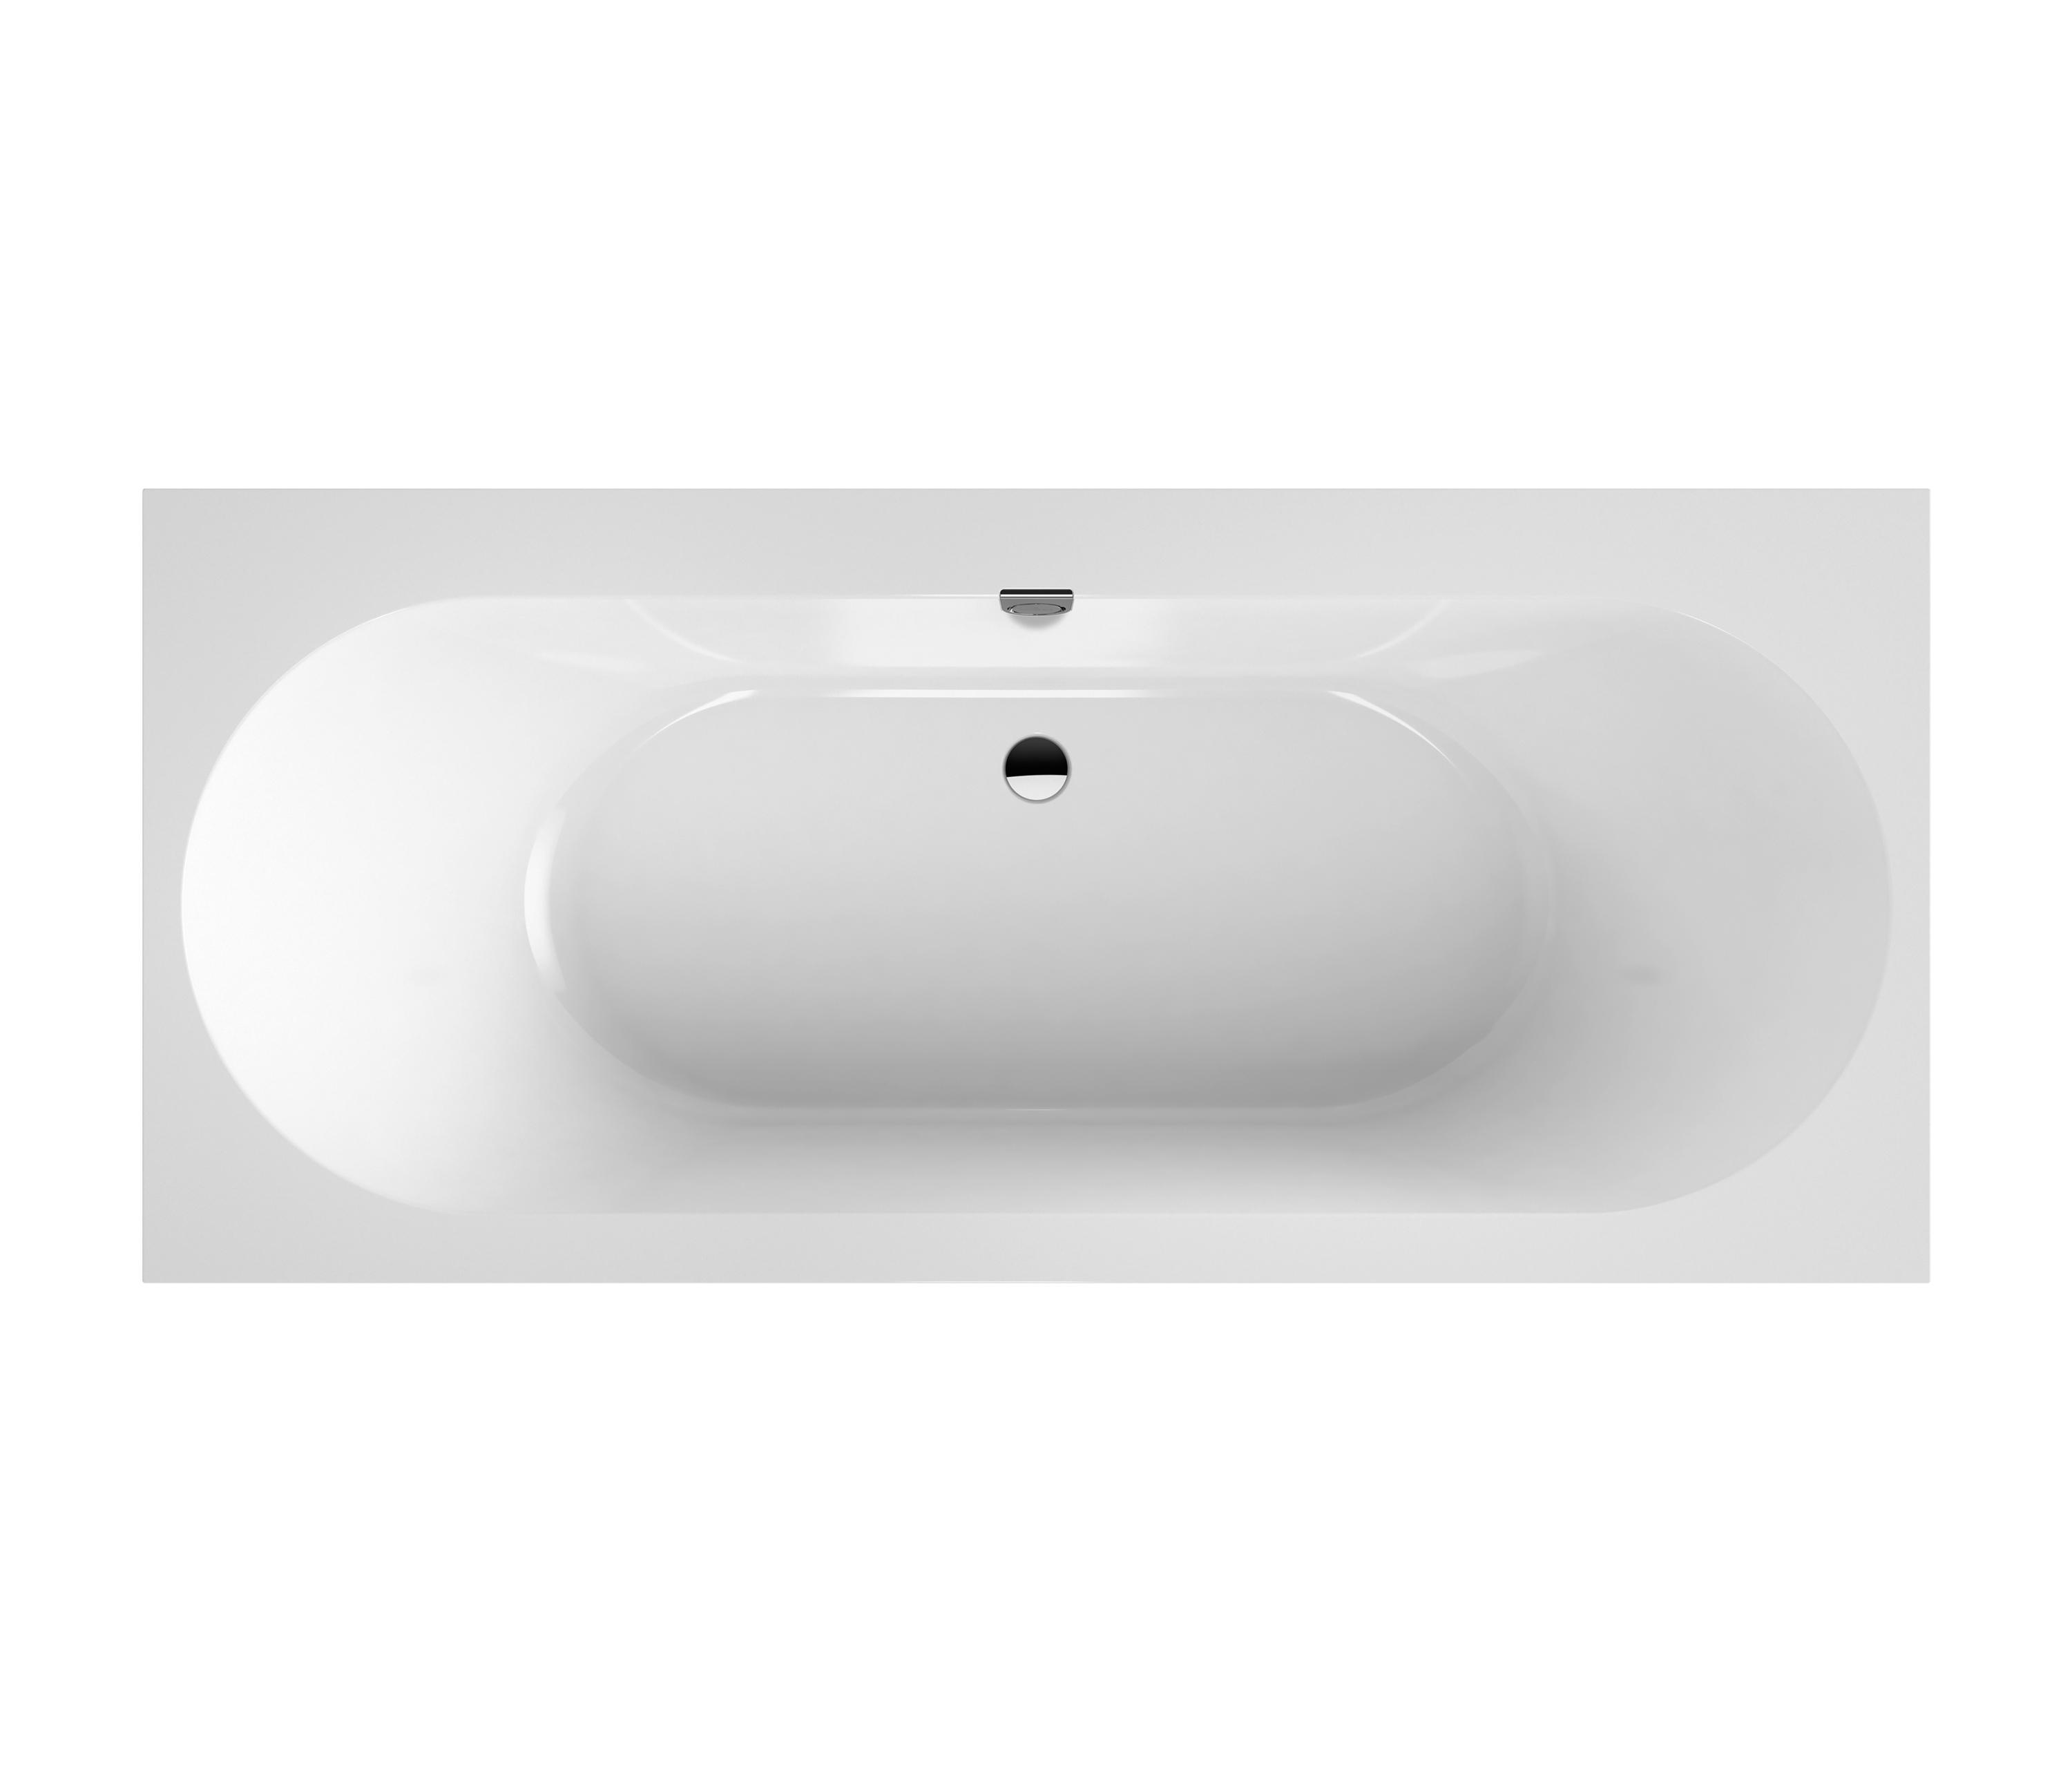 Slink Geruststellen voorbeeld Oberon 2.0 Bath & designer furniture | Architonic